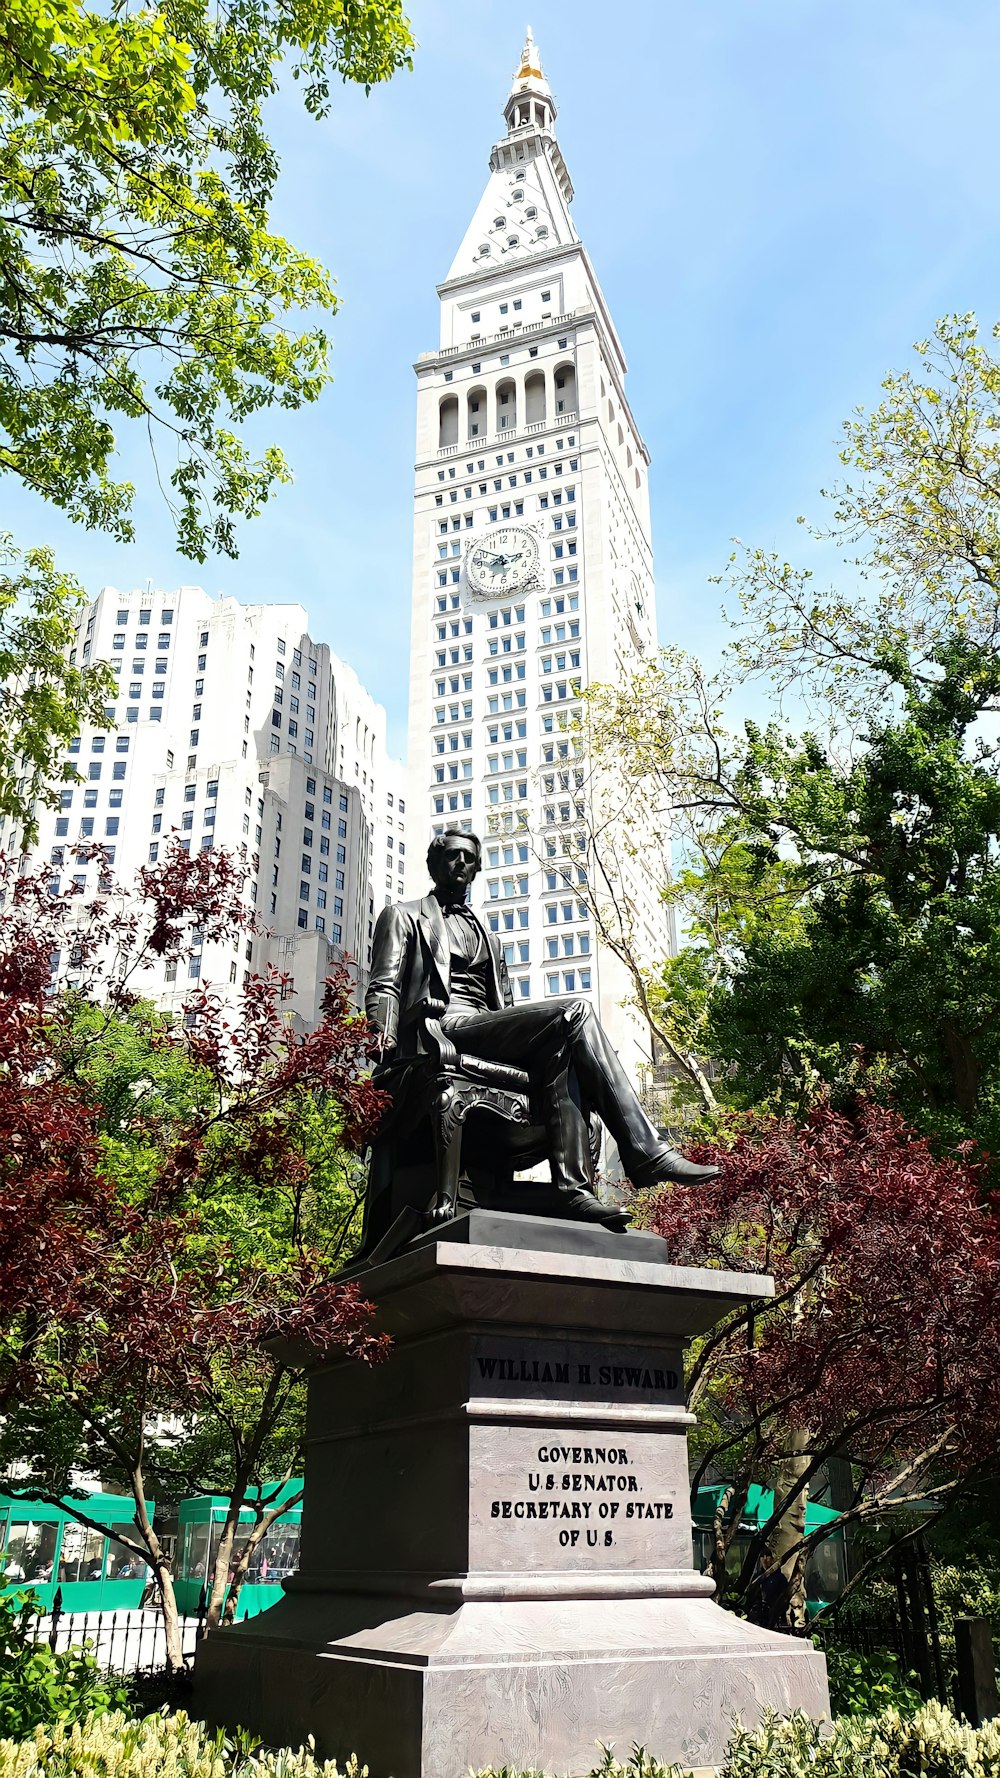 Statua seduta dell'uomo vicino all'edificio in cemento bianco durante il giorno